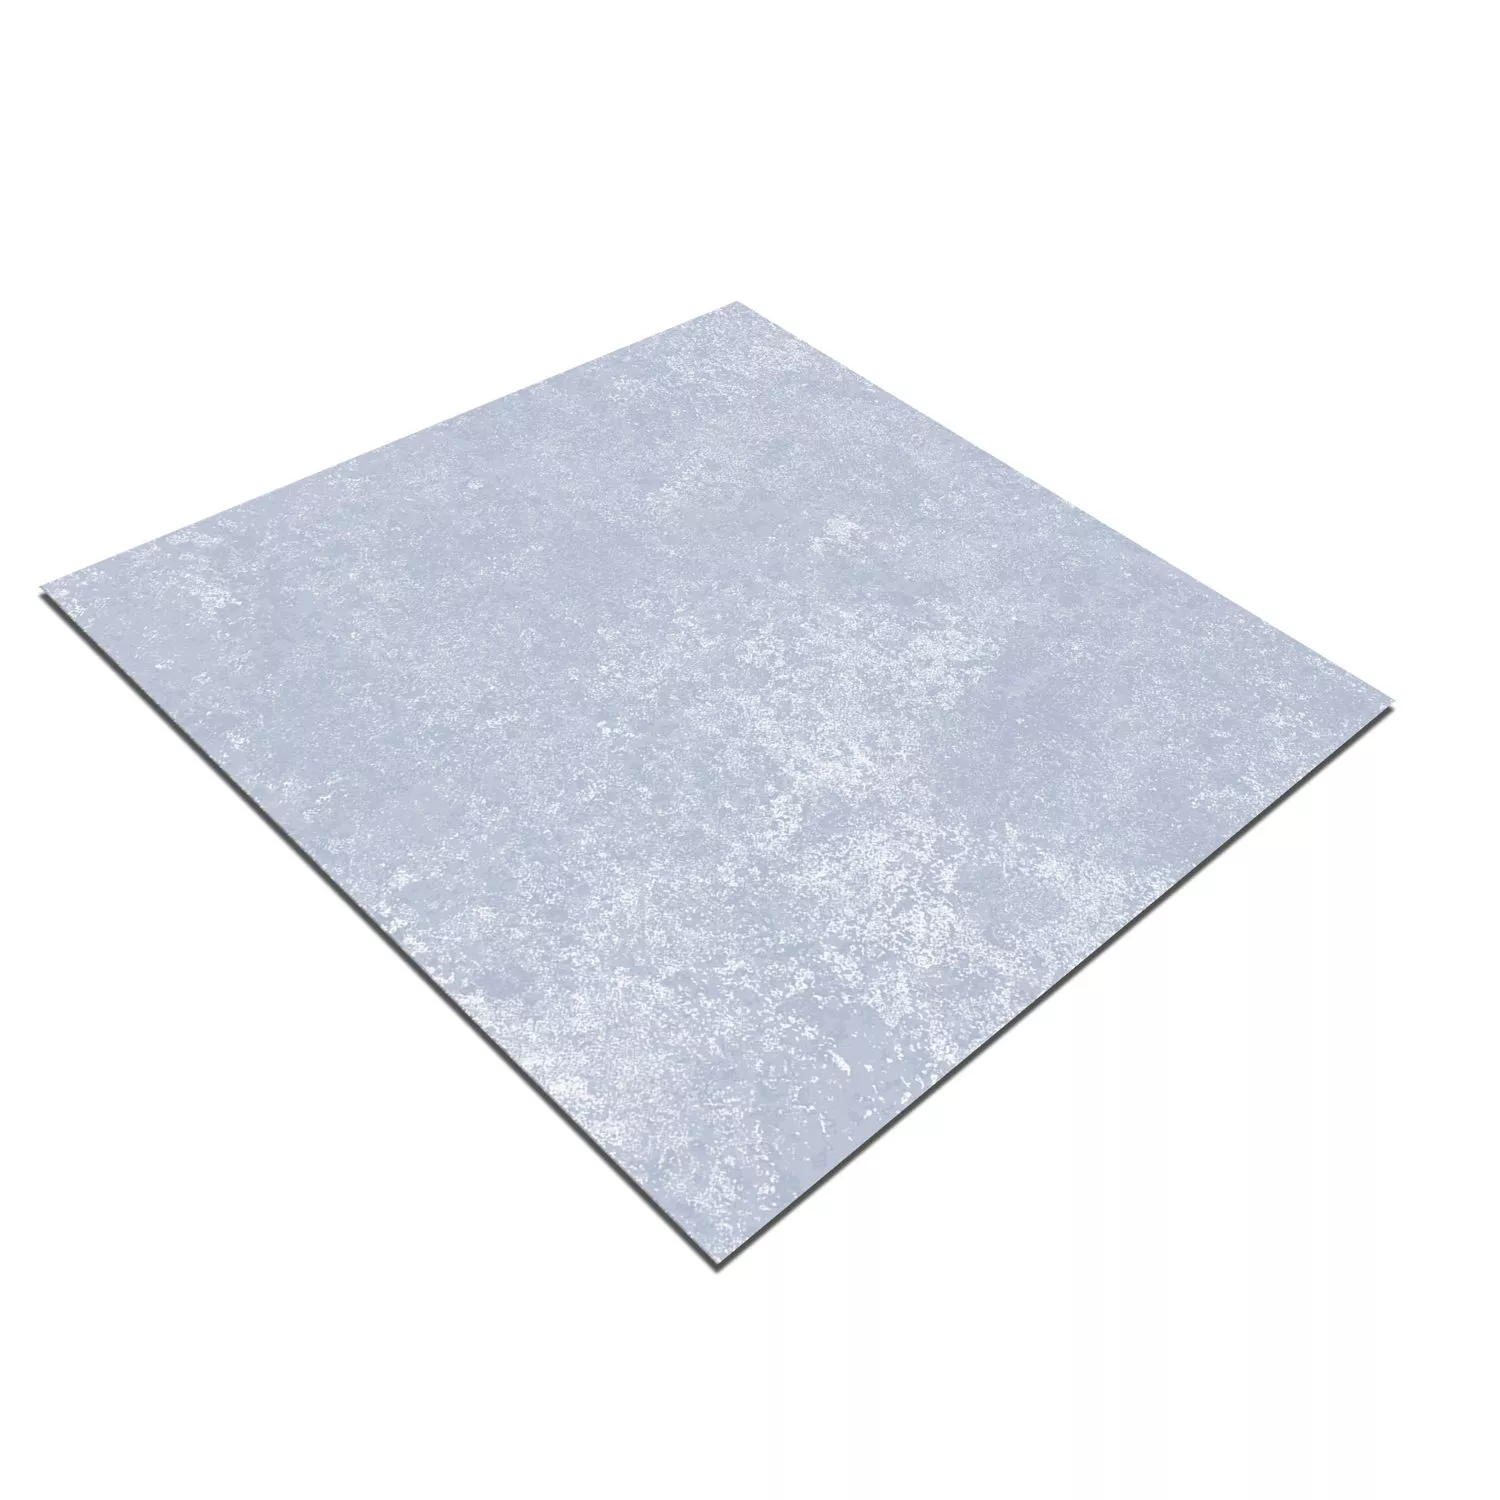 Sample Cement Tiles Retro Optic Gris Basic Tile Blue 18,6x18,6cm